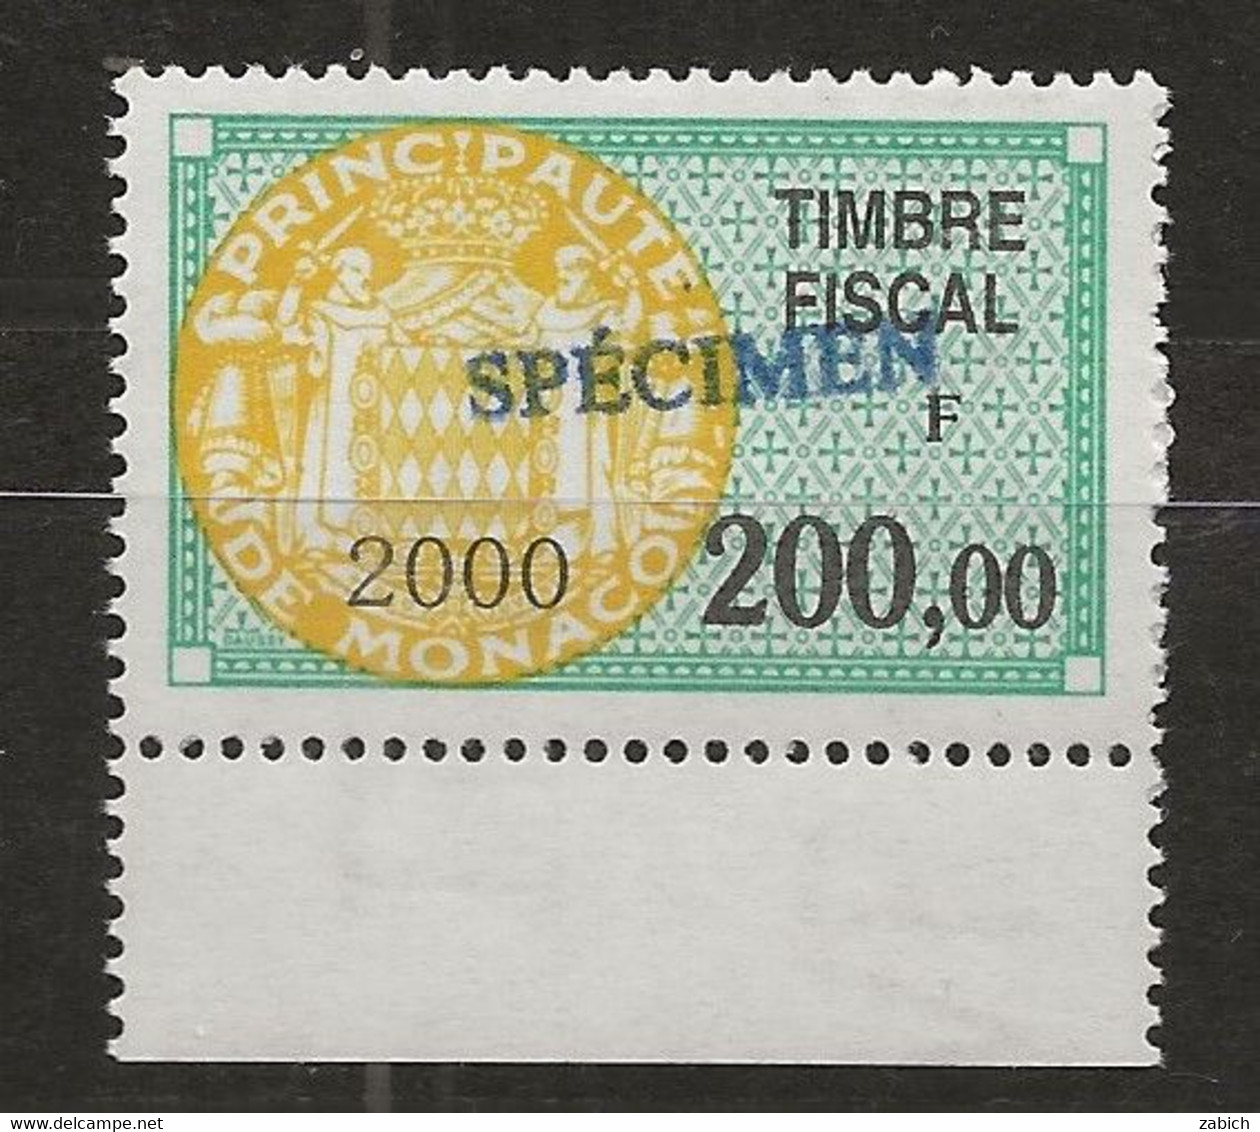 TIMBRES FISCAUX DE MONACO SERIE UNIFIEE N°98 200F Vert, Jaune 2000 Rare Surchargé Spécimen Neuf Gomme Mnh (**) - Steuermarken